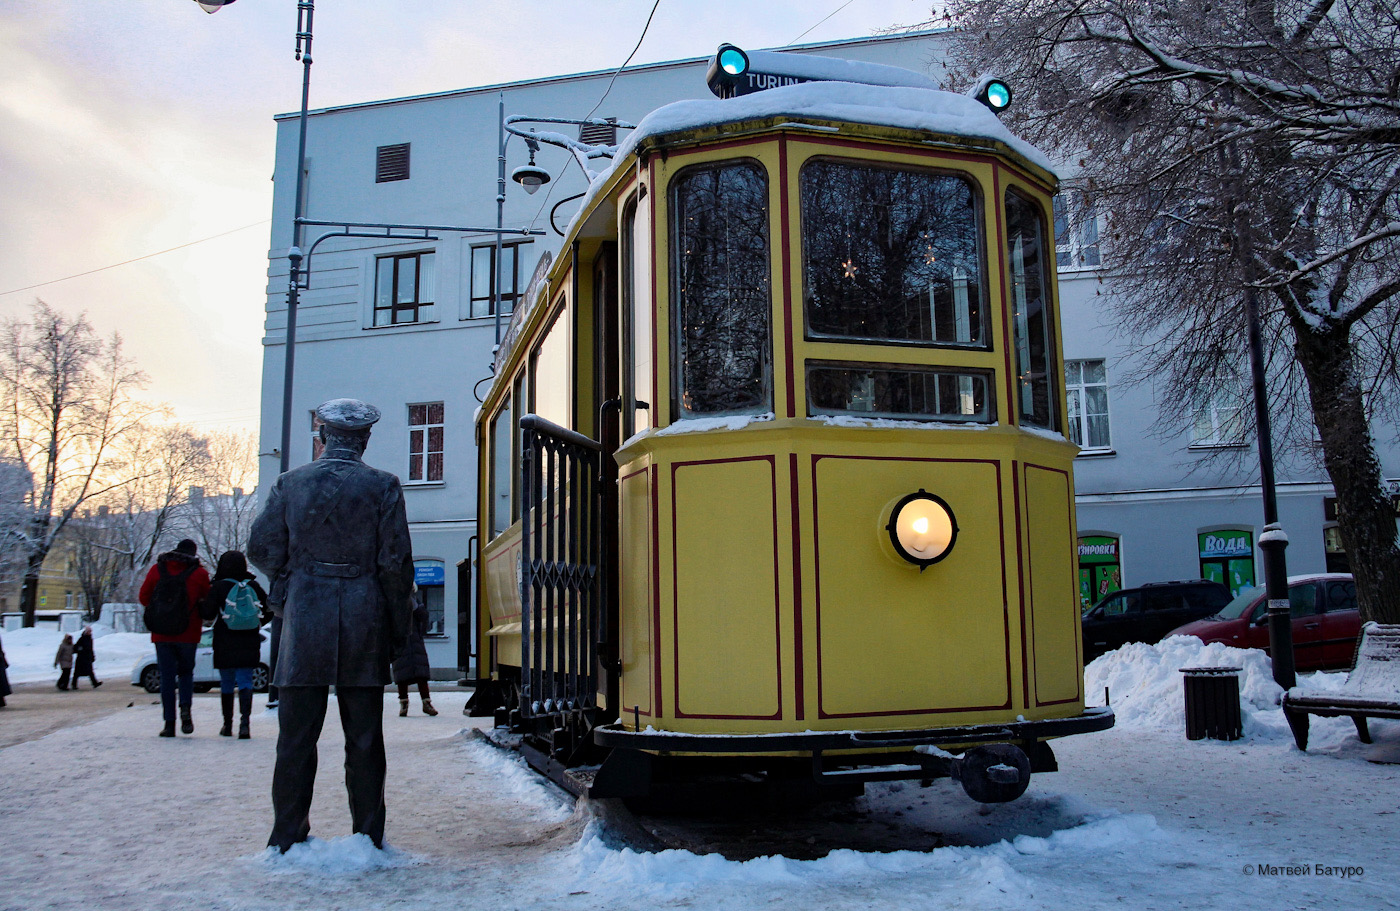 維堡 — Tram car monument